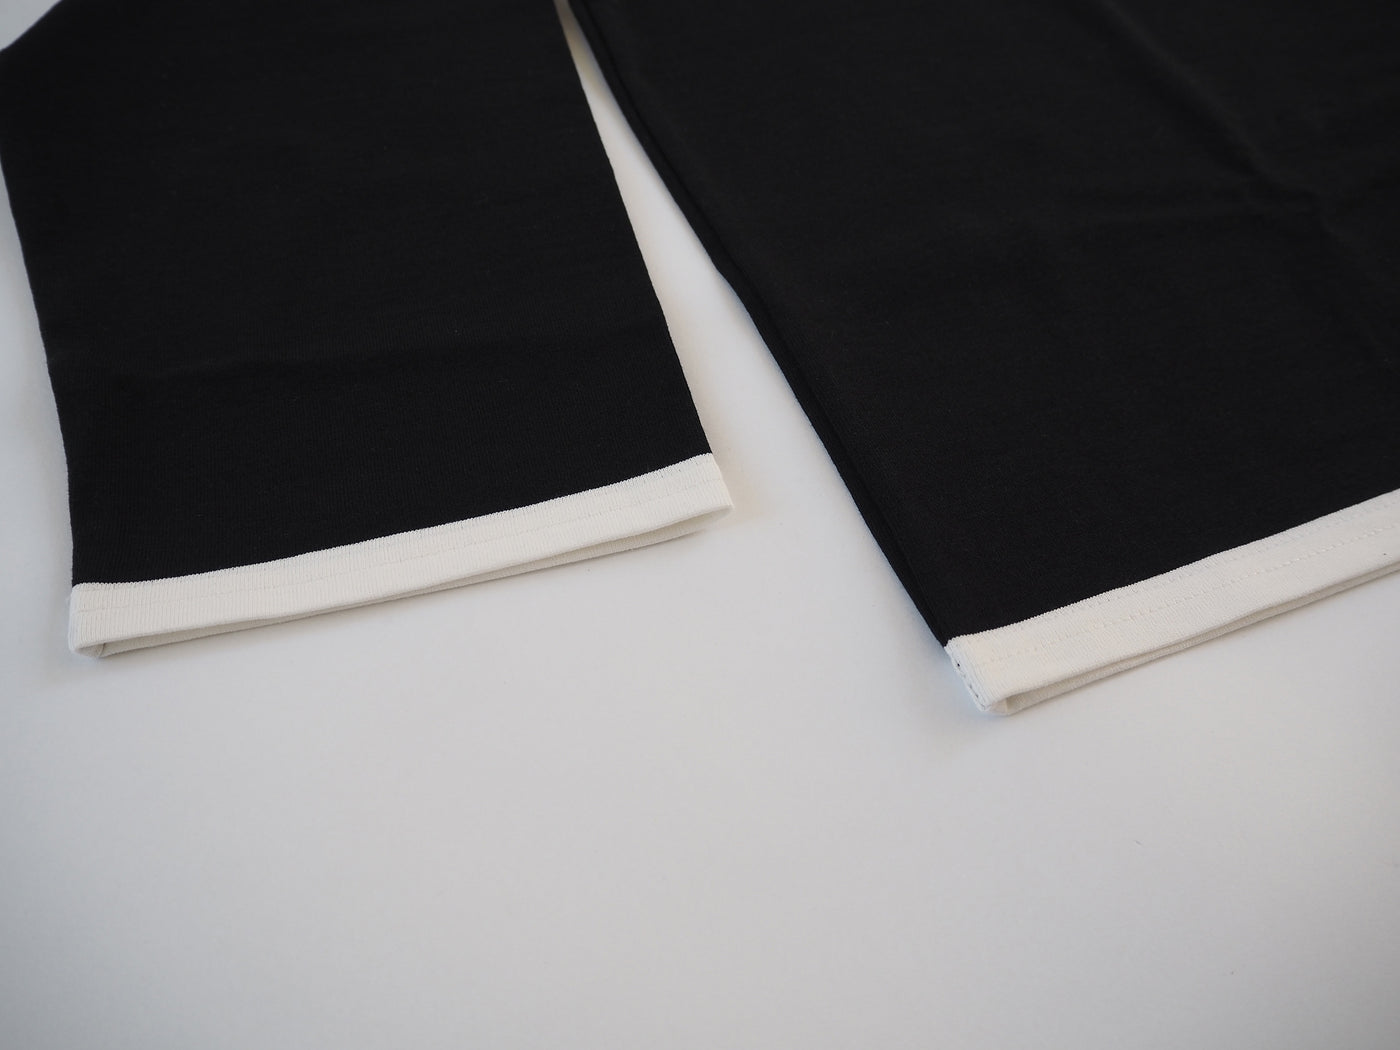 パネルボーダーバスクシャツ, Black × White